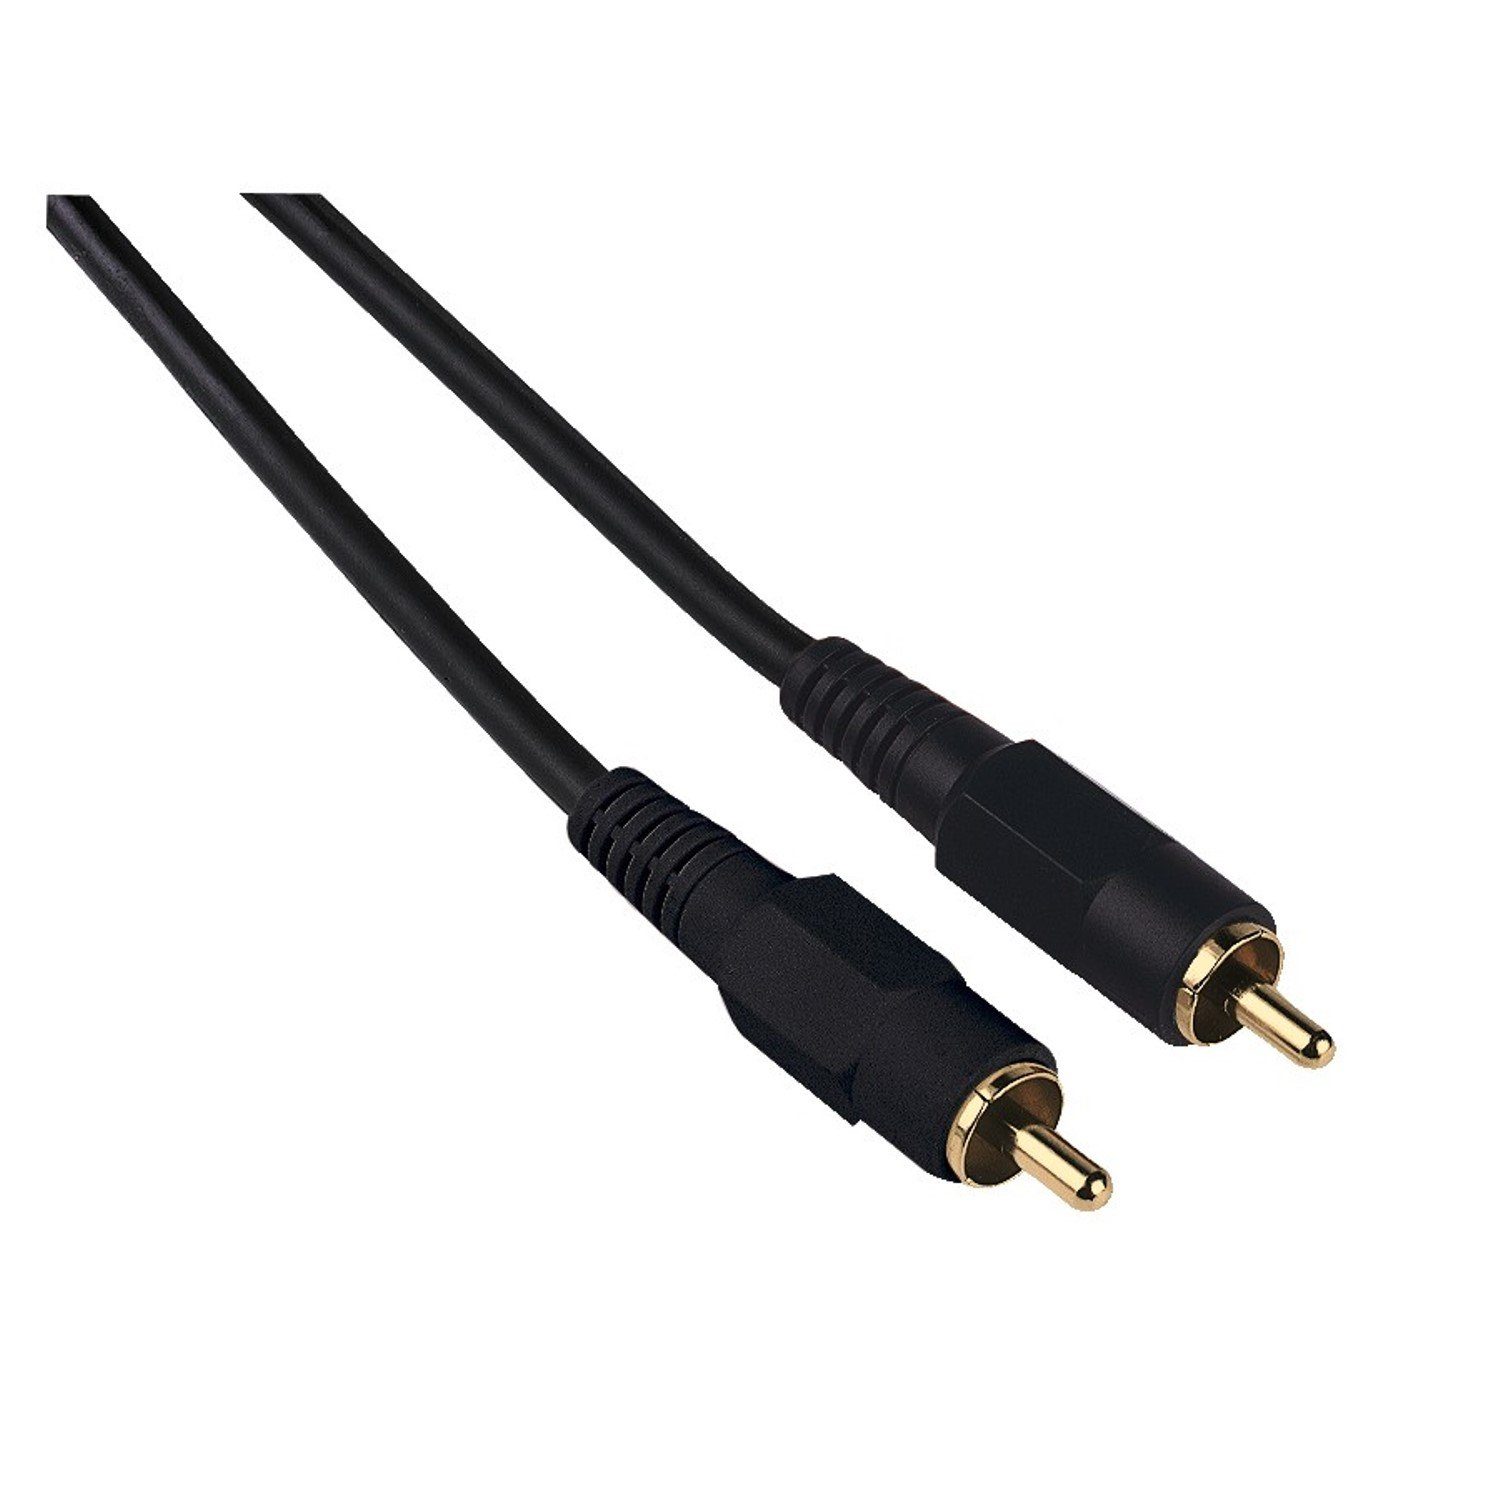 Hama Digital Cinch-Kabel 1:1 Koaxial Audio Audio-Kabel, Cinch, Cinch, Audio- Kabel mit RCA- Chinch-Anschluss, für Verstärker, Receiver etc